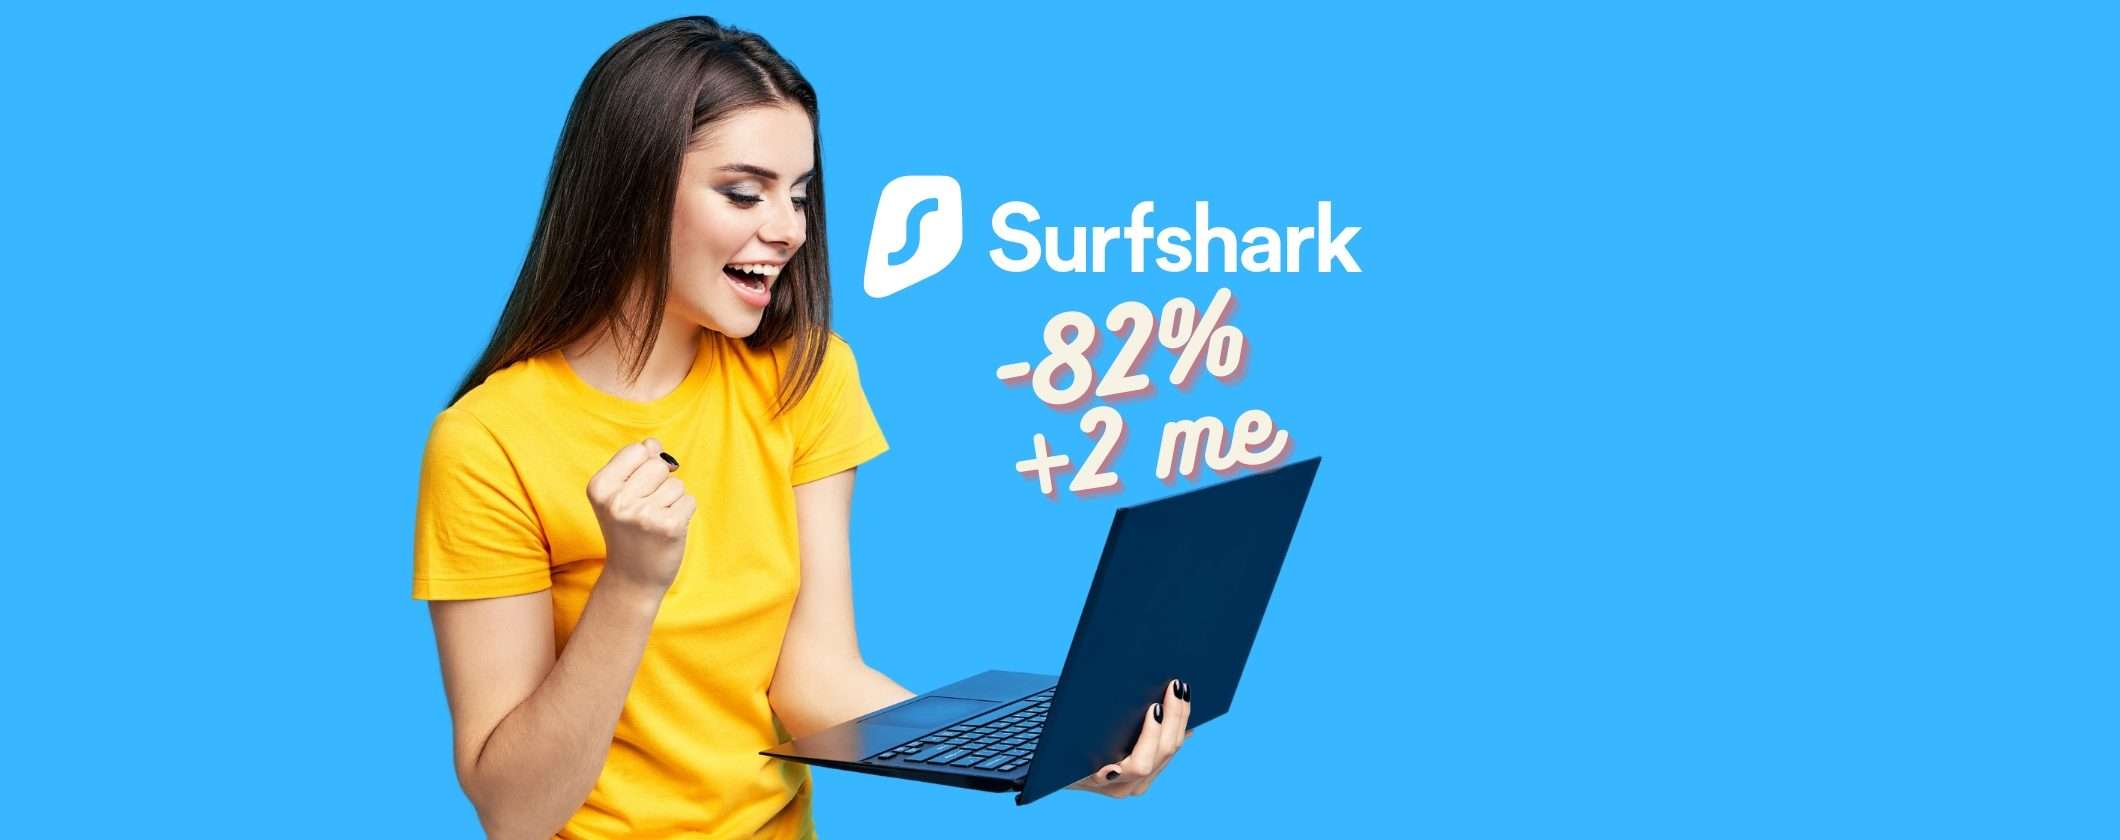 Surfshark VPN: ecco il link per attivarla all'82% di sconto e 2 mesi Gratis